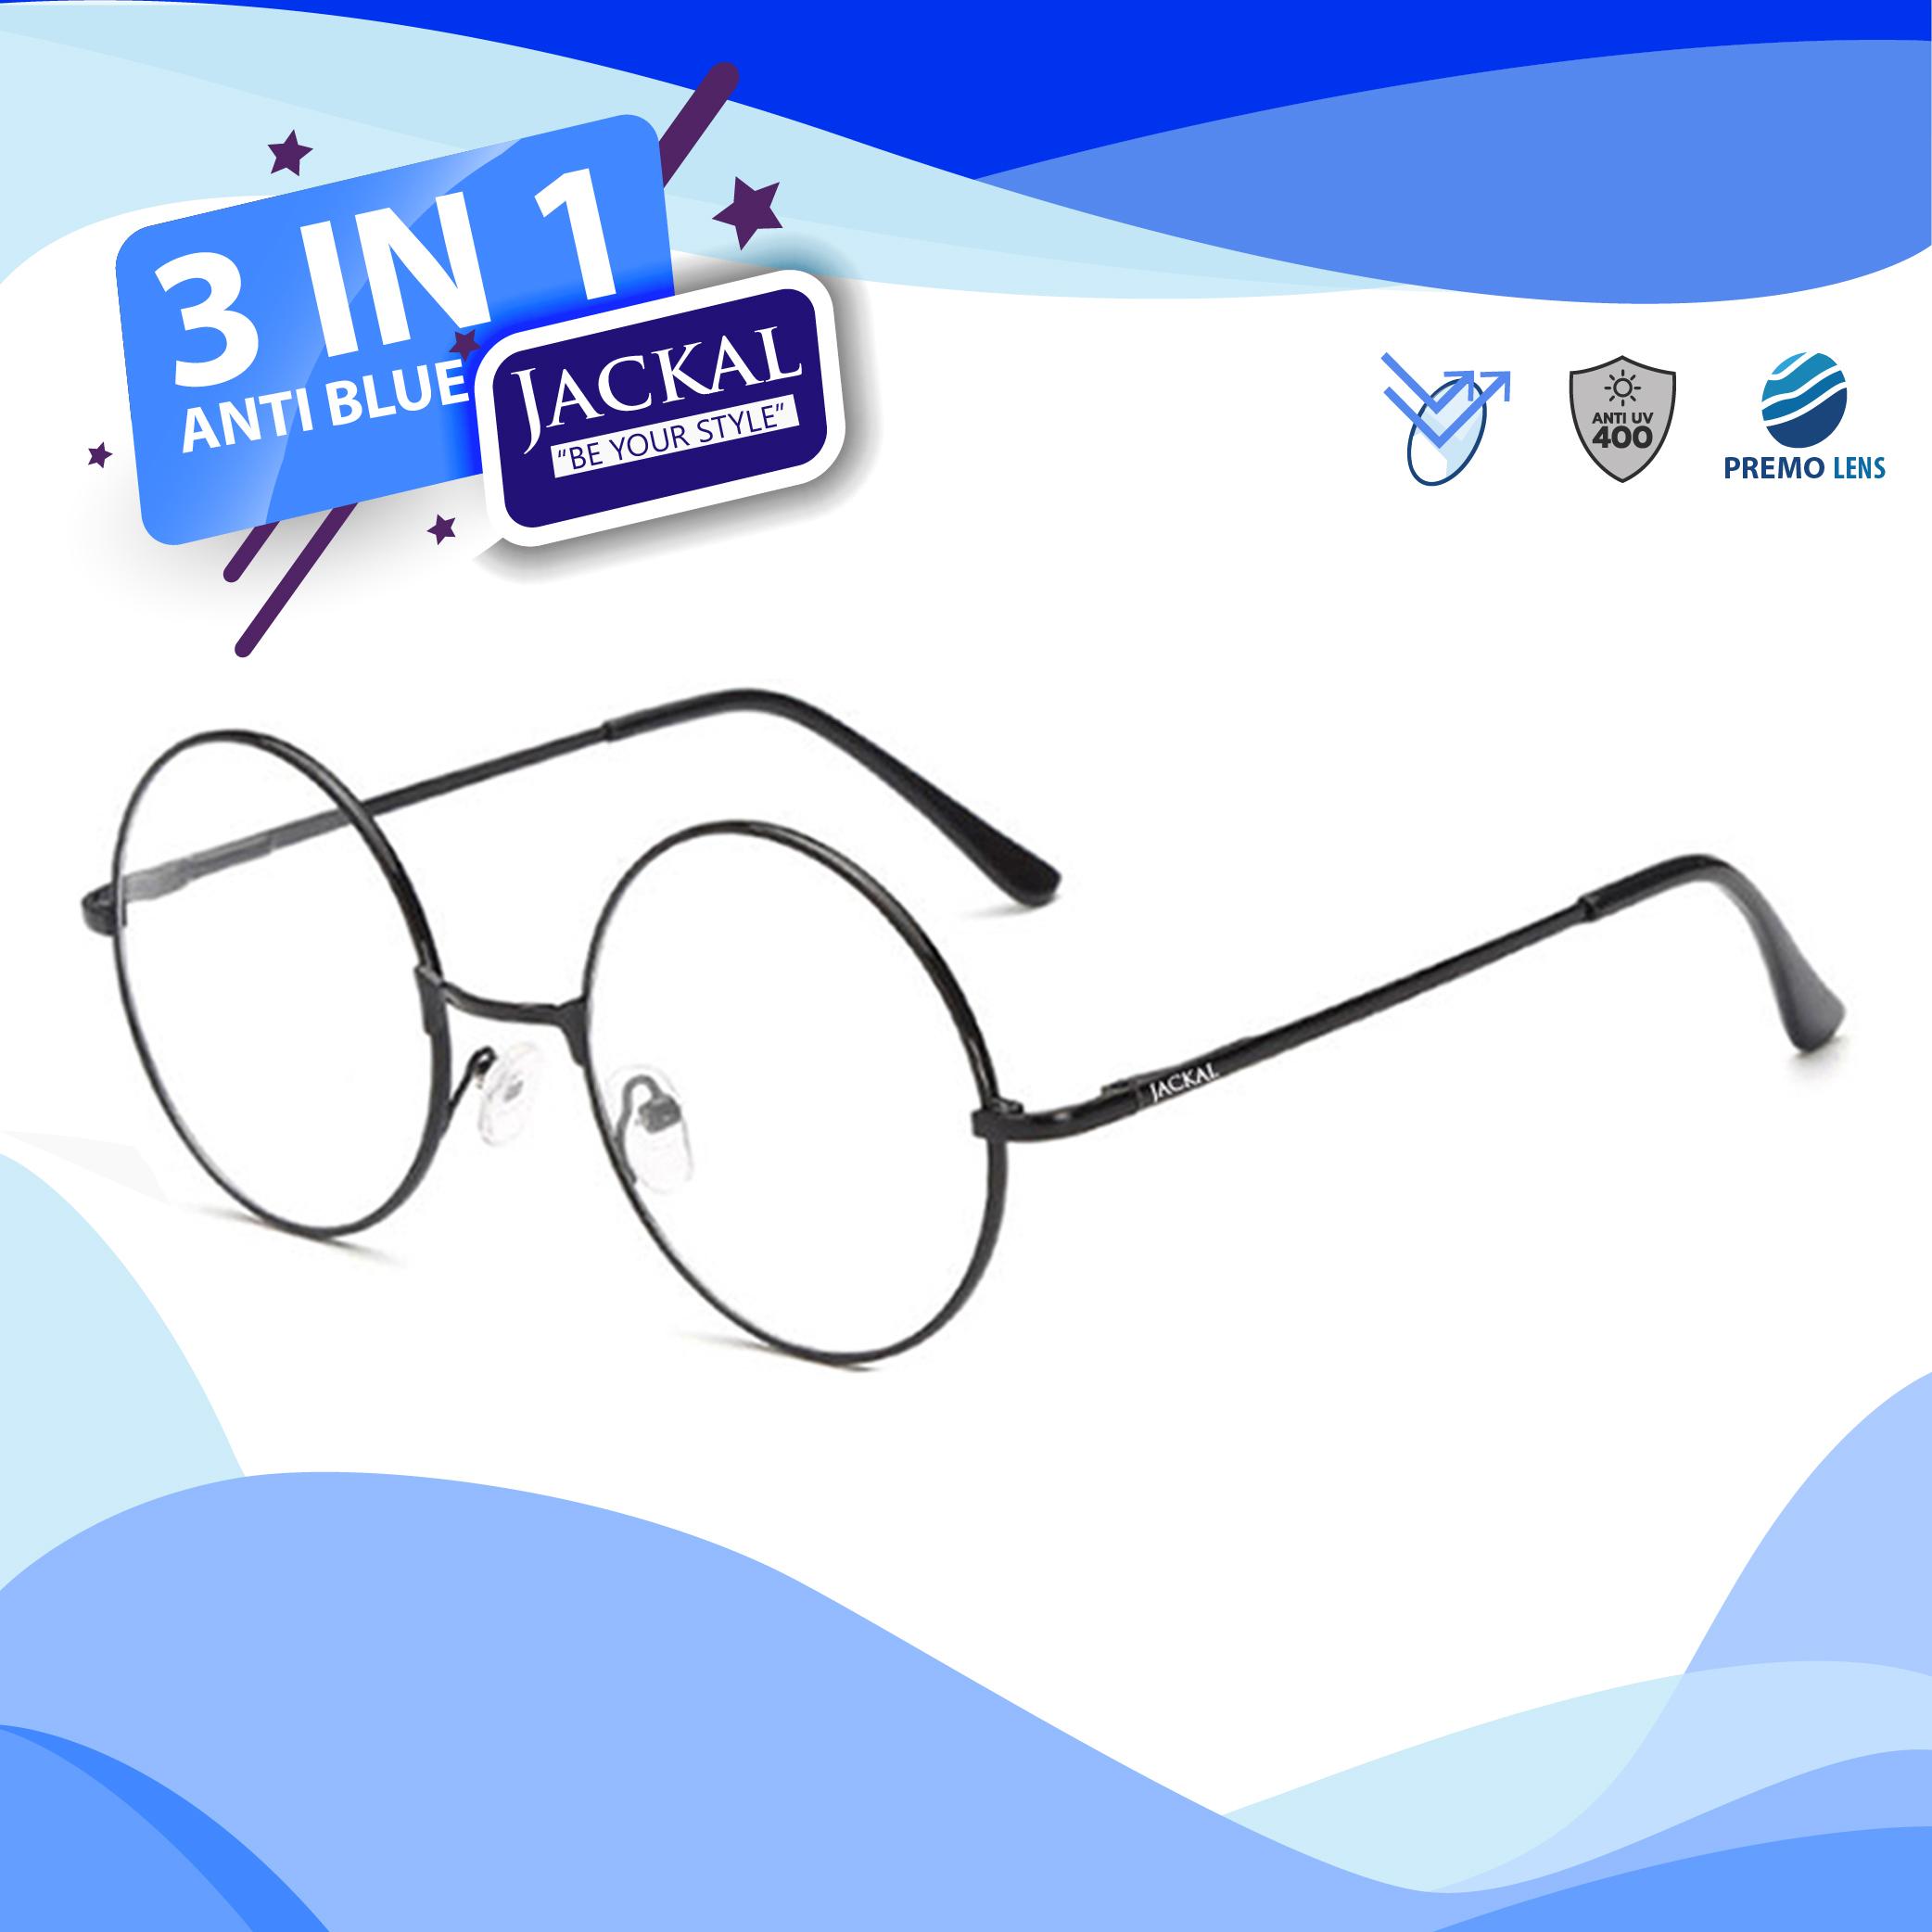 JACKAL แว่นกรองแสงสีฟ้า รุ่น OP024BLB - PREMO Lens เคลือบมัลติโค้ด สุดยอดเทคโนโลยีเลนส์ใหม่จากญี่ปุ่น